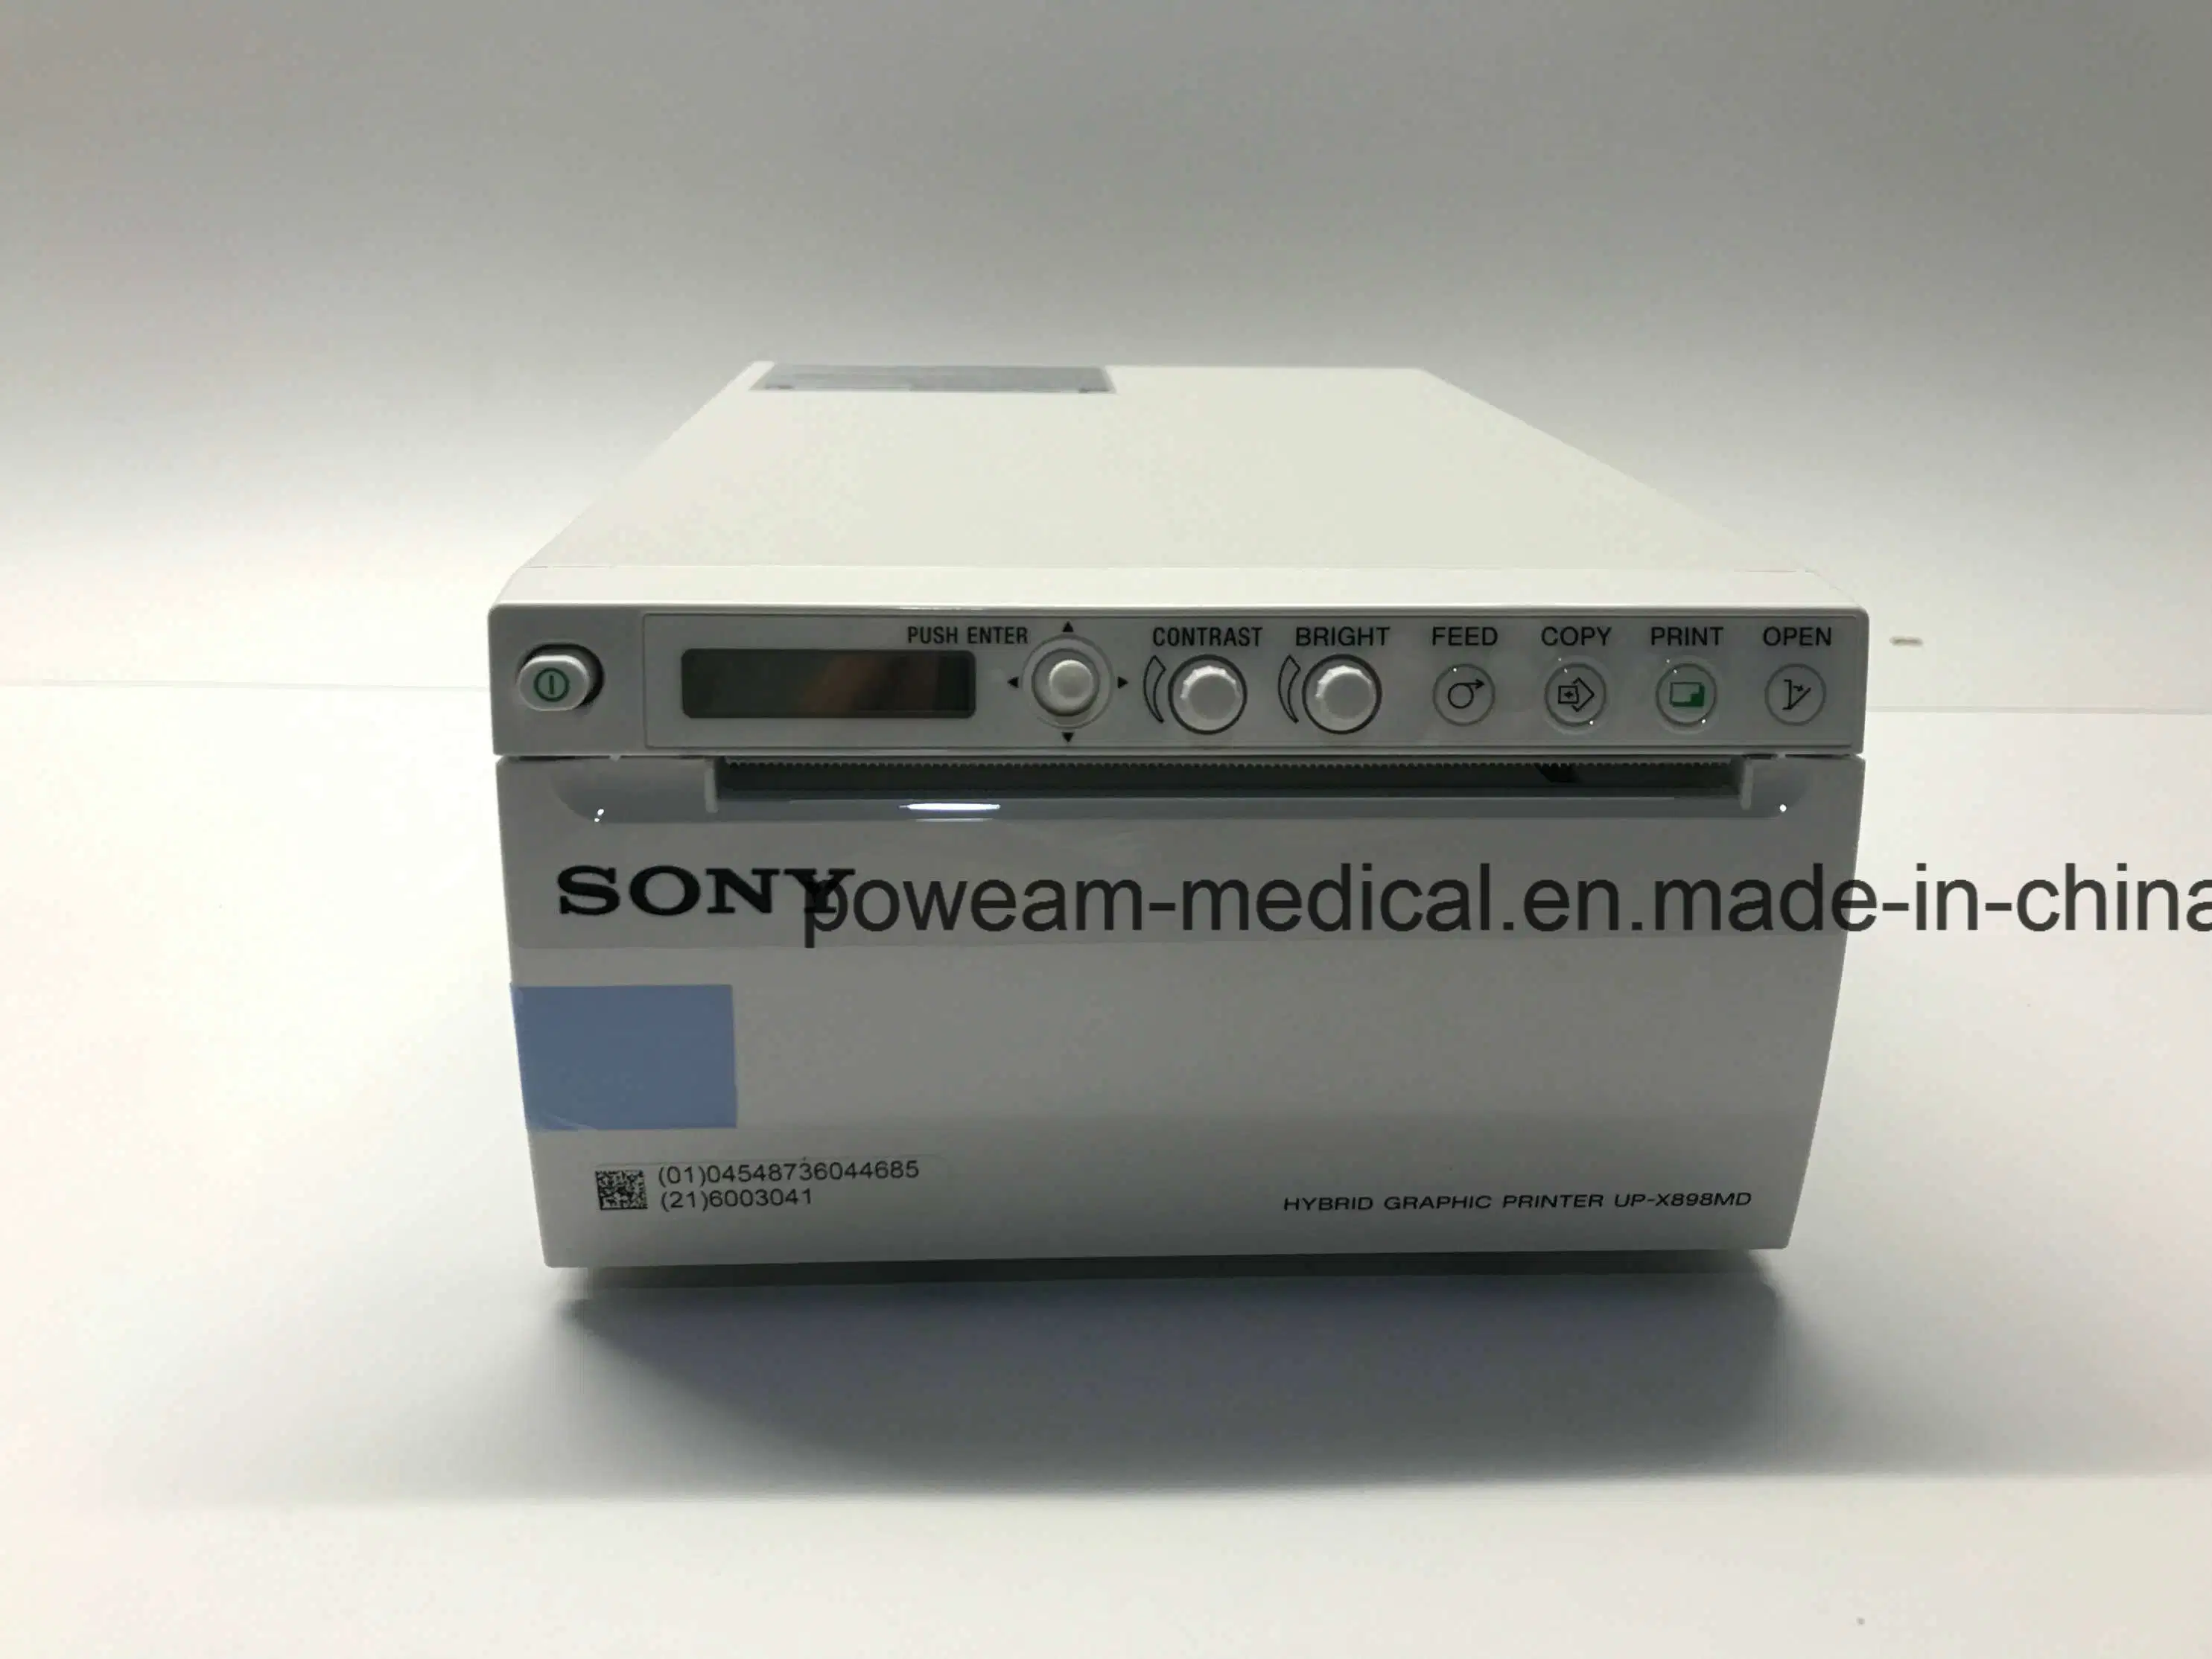 فيديو حراري للمستشفى طابعة سوني للموجات فوق الصوتية (أعلى-898MD)